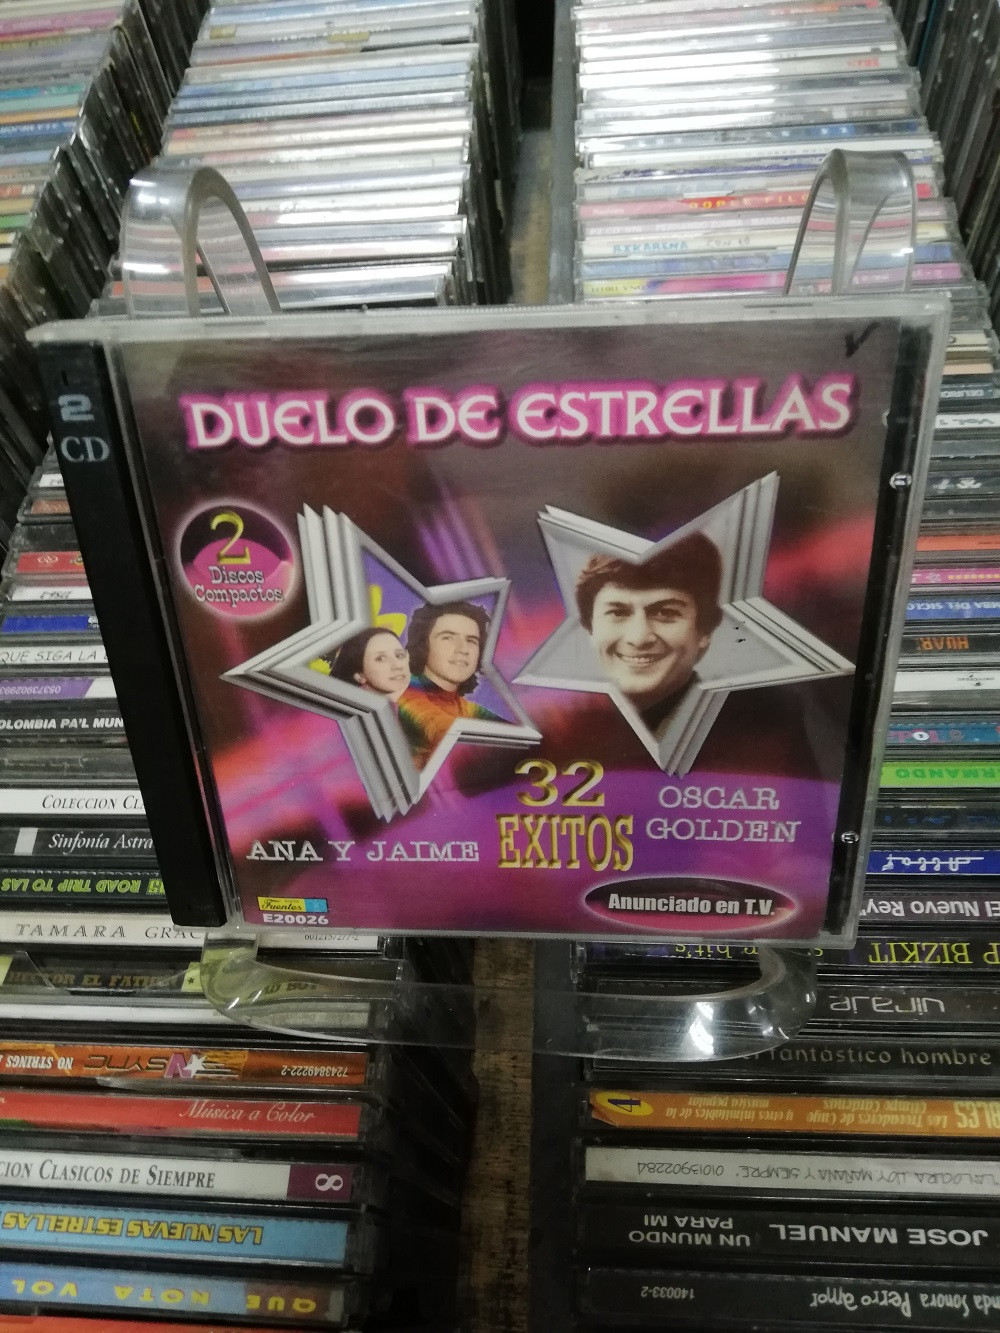 Imagen CD DOBLE ANA Y JAIME/OSCAR GOLDEN - DUELO DE ESTRELLAS 1